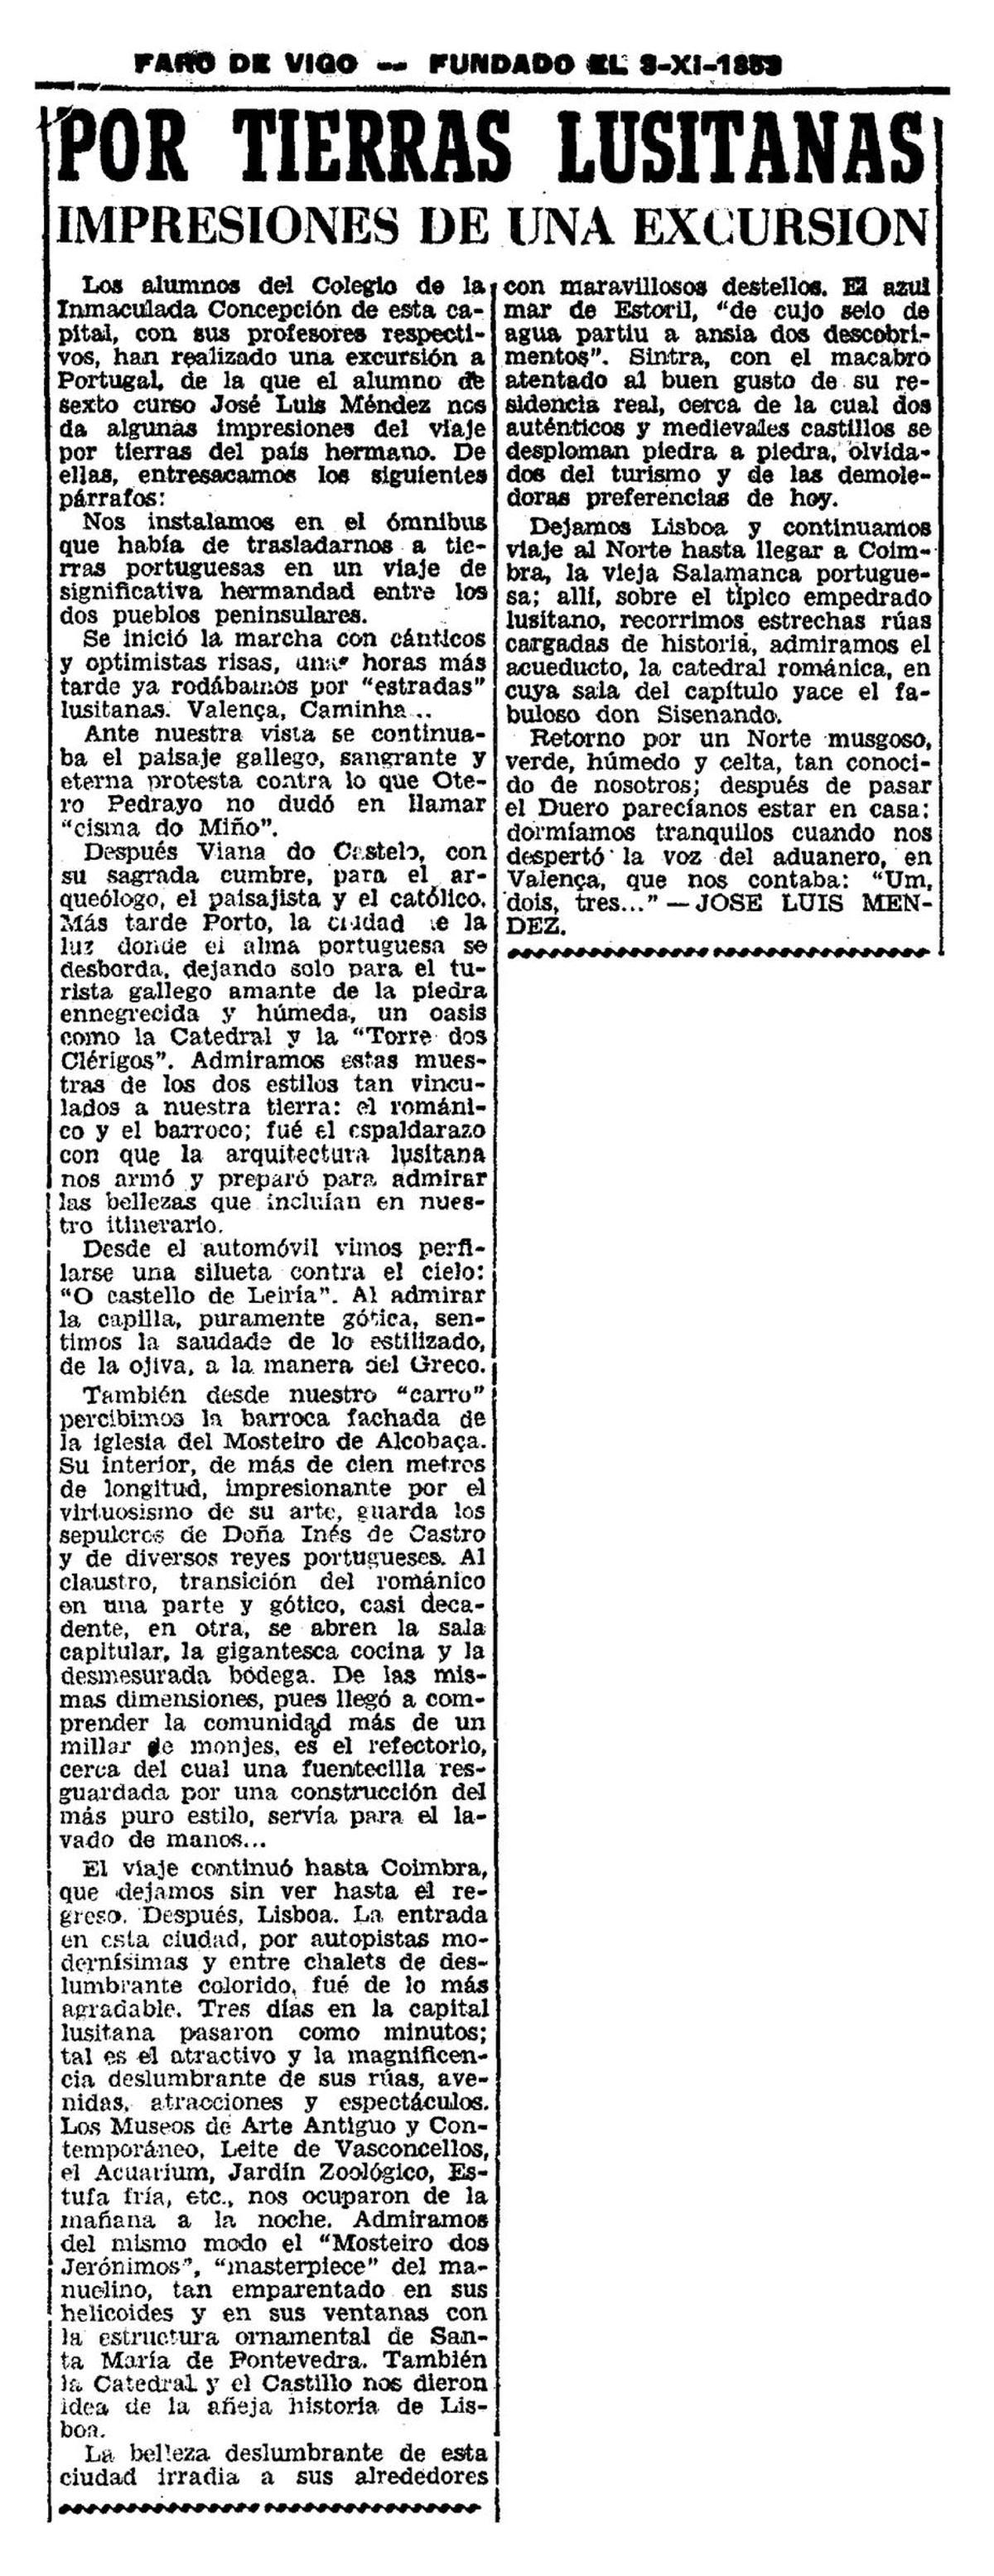 Primeiro artigo publicado por Méndez Ferrín en FARO (abril de 1954)